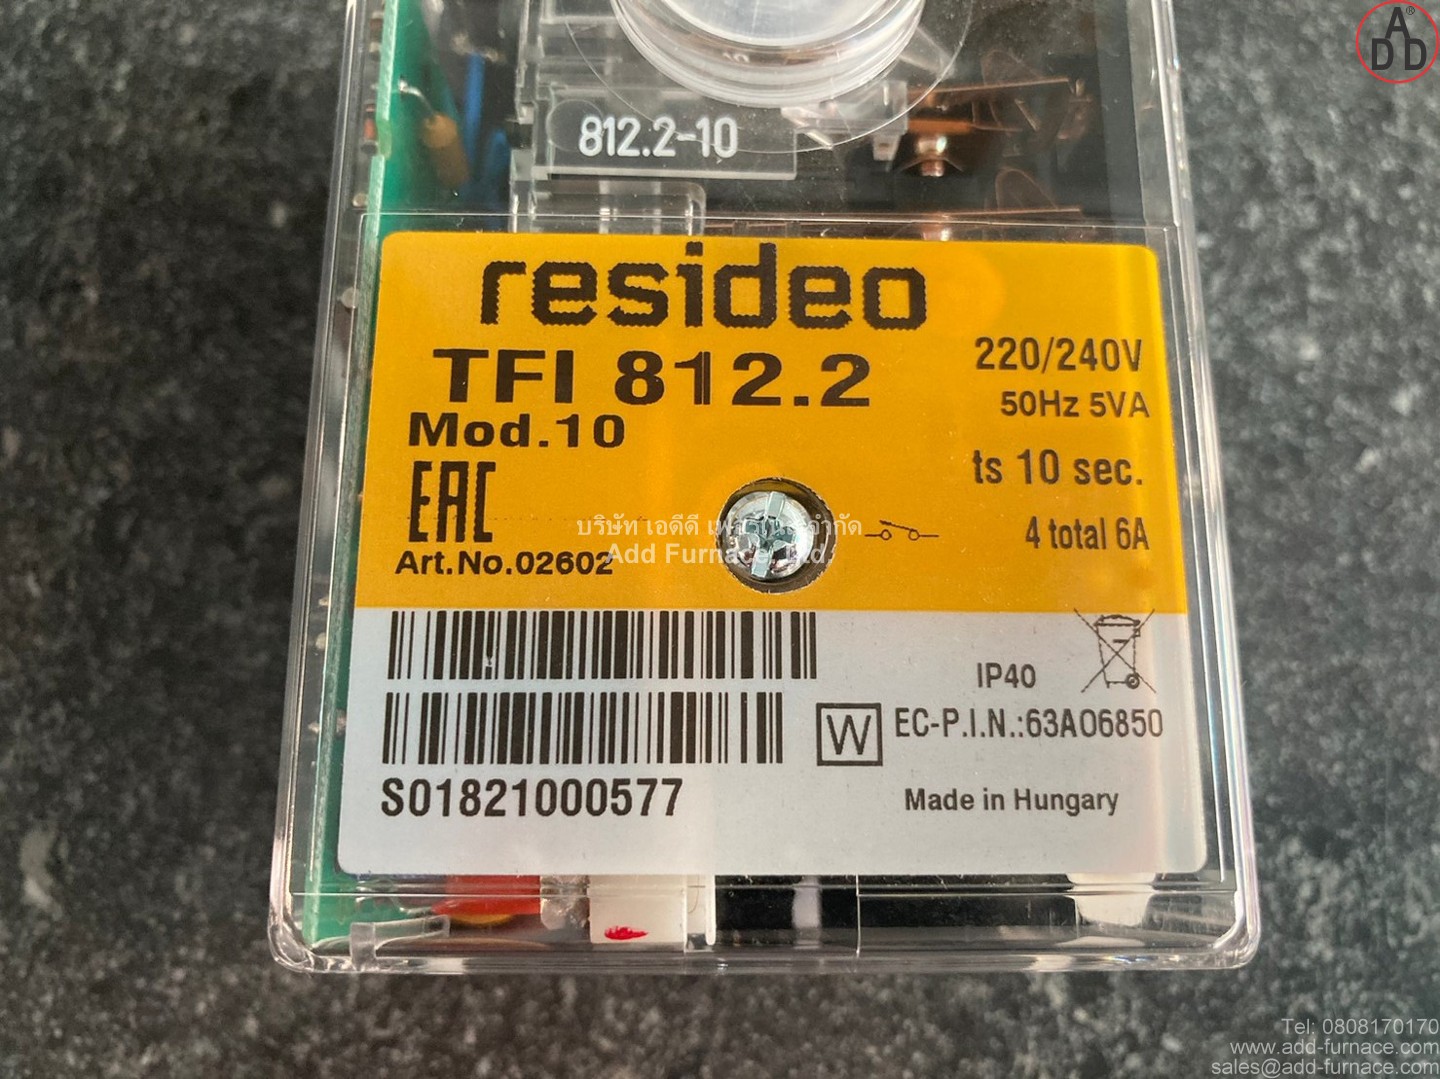 resideo TFI 812.2 Mod.10 (2)